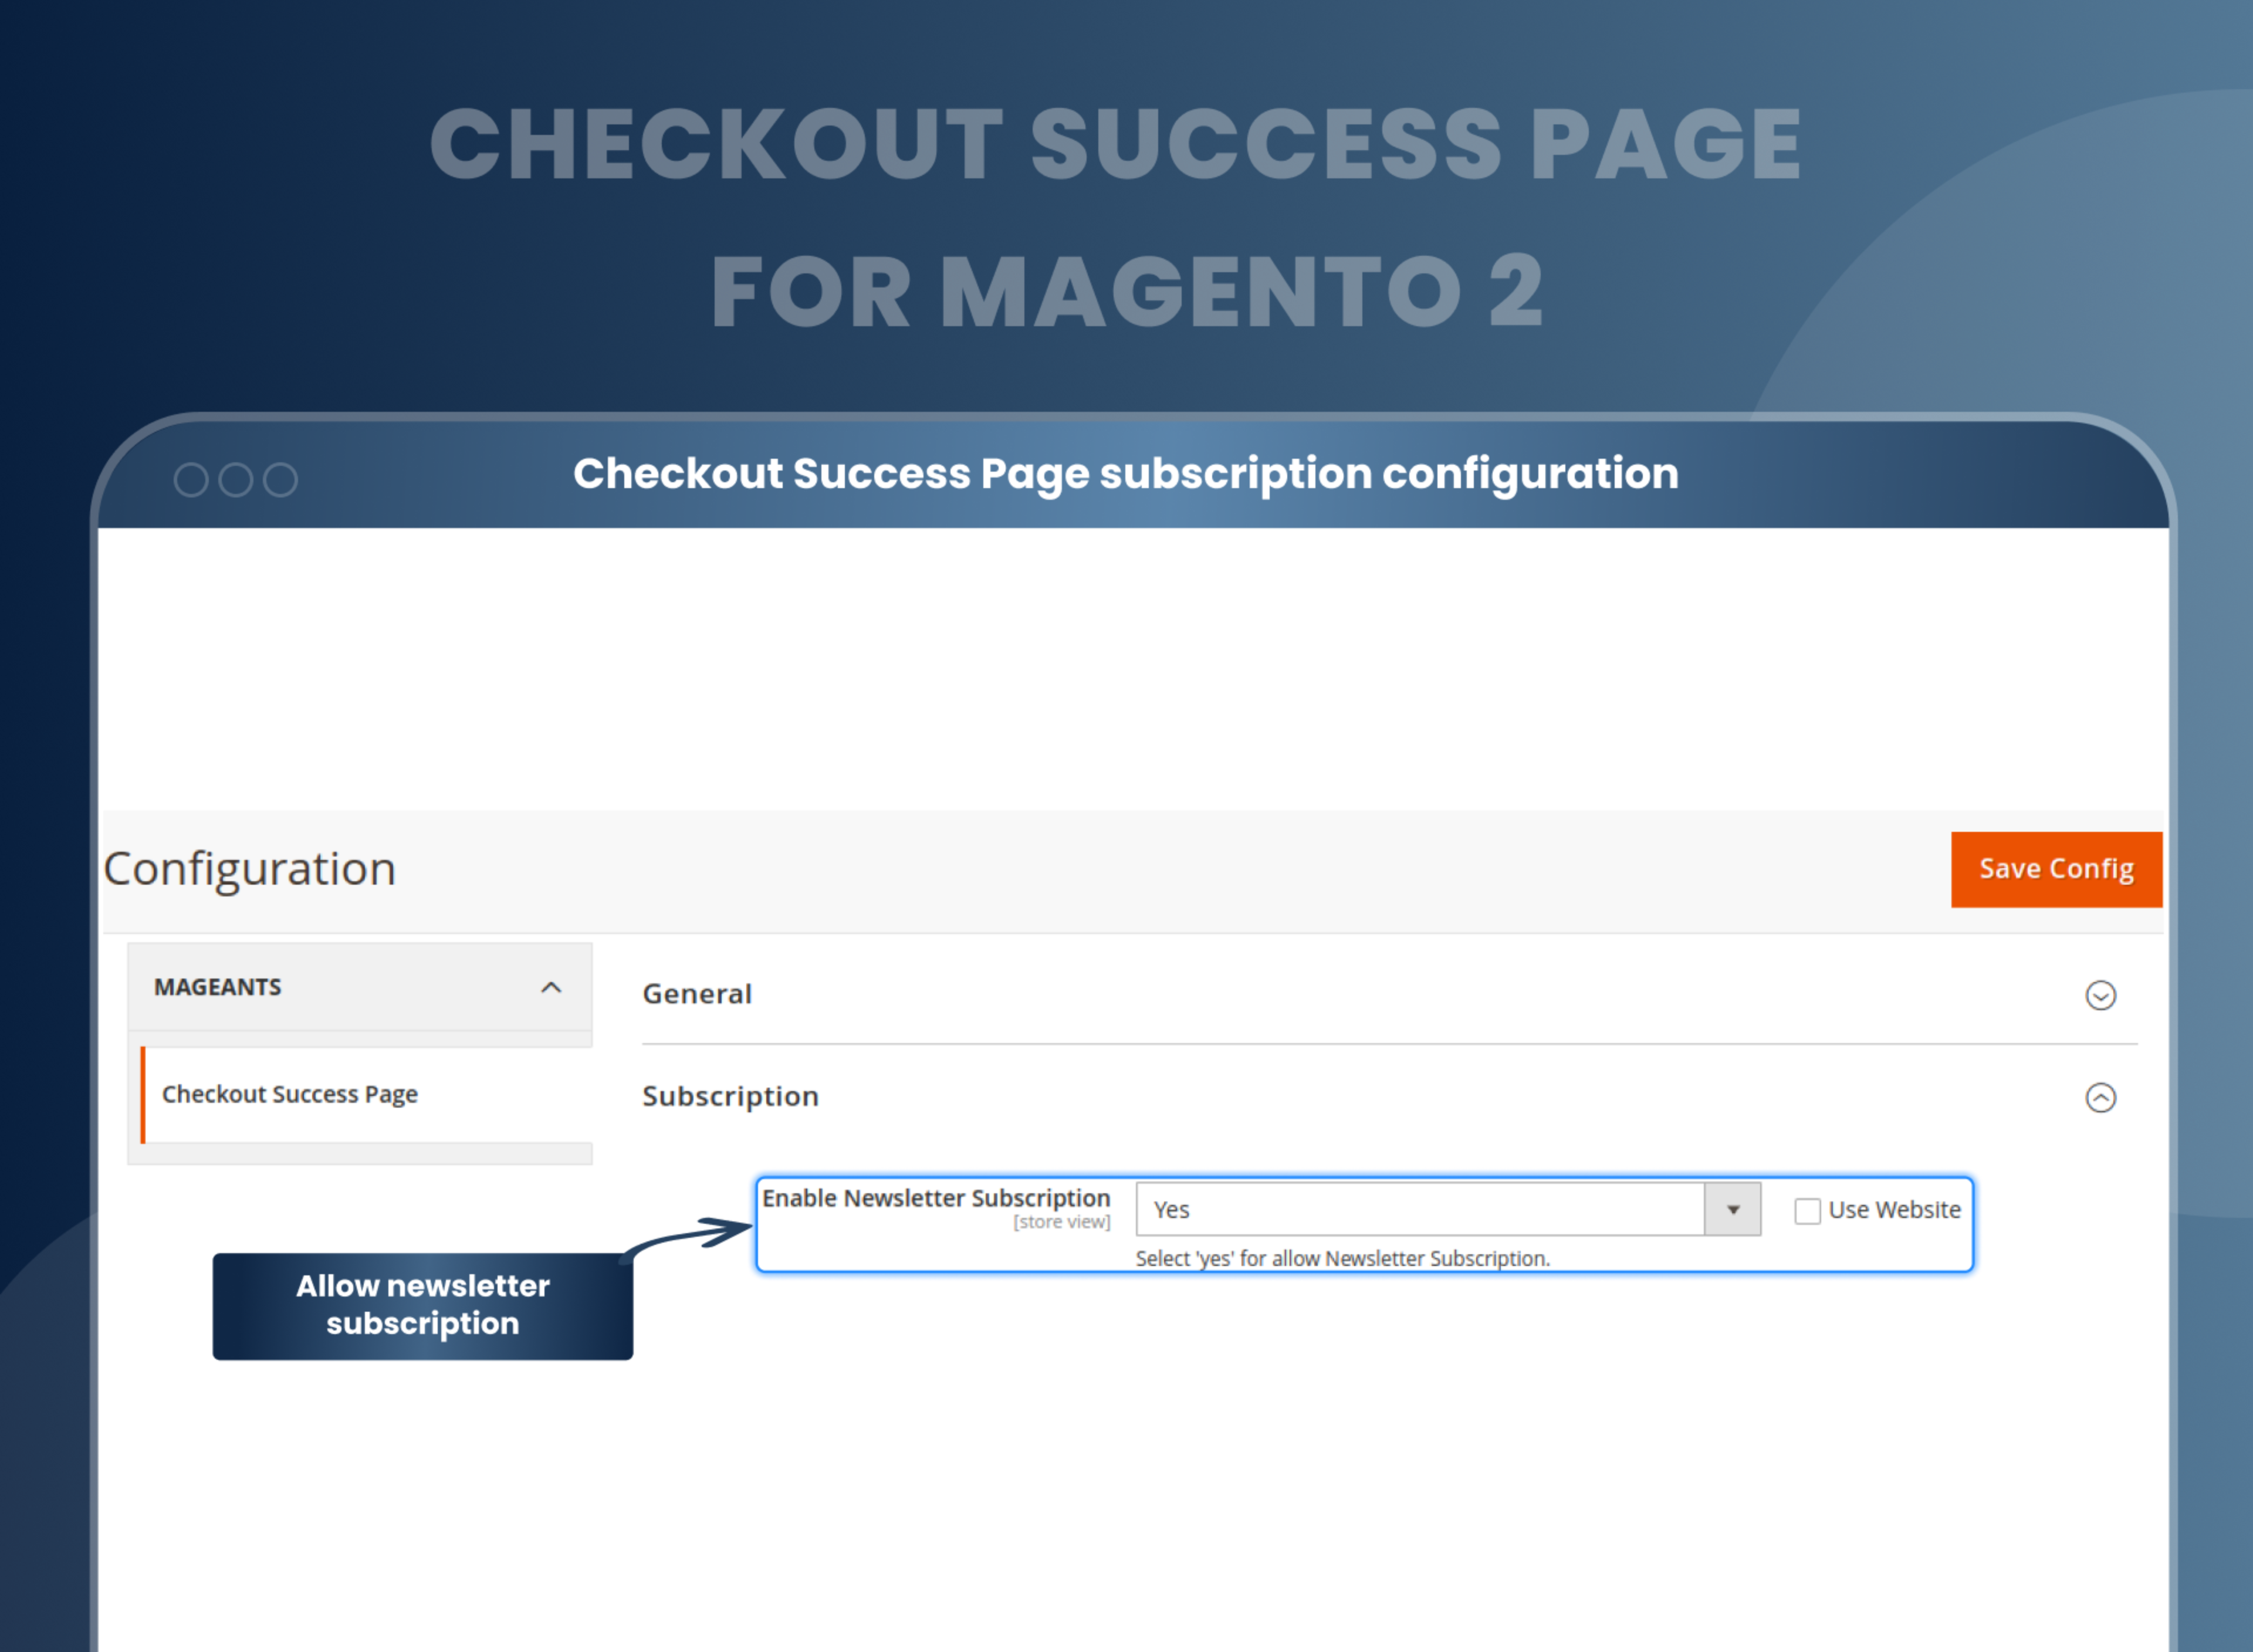 Checkout Success Page subscription configuration